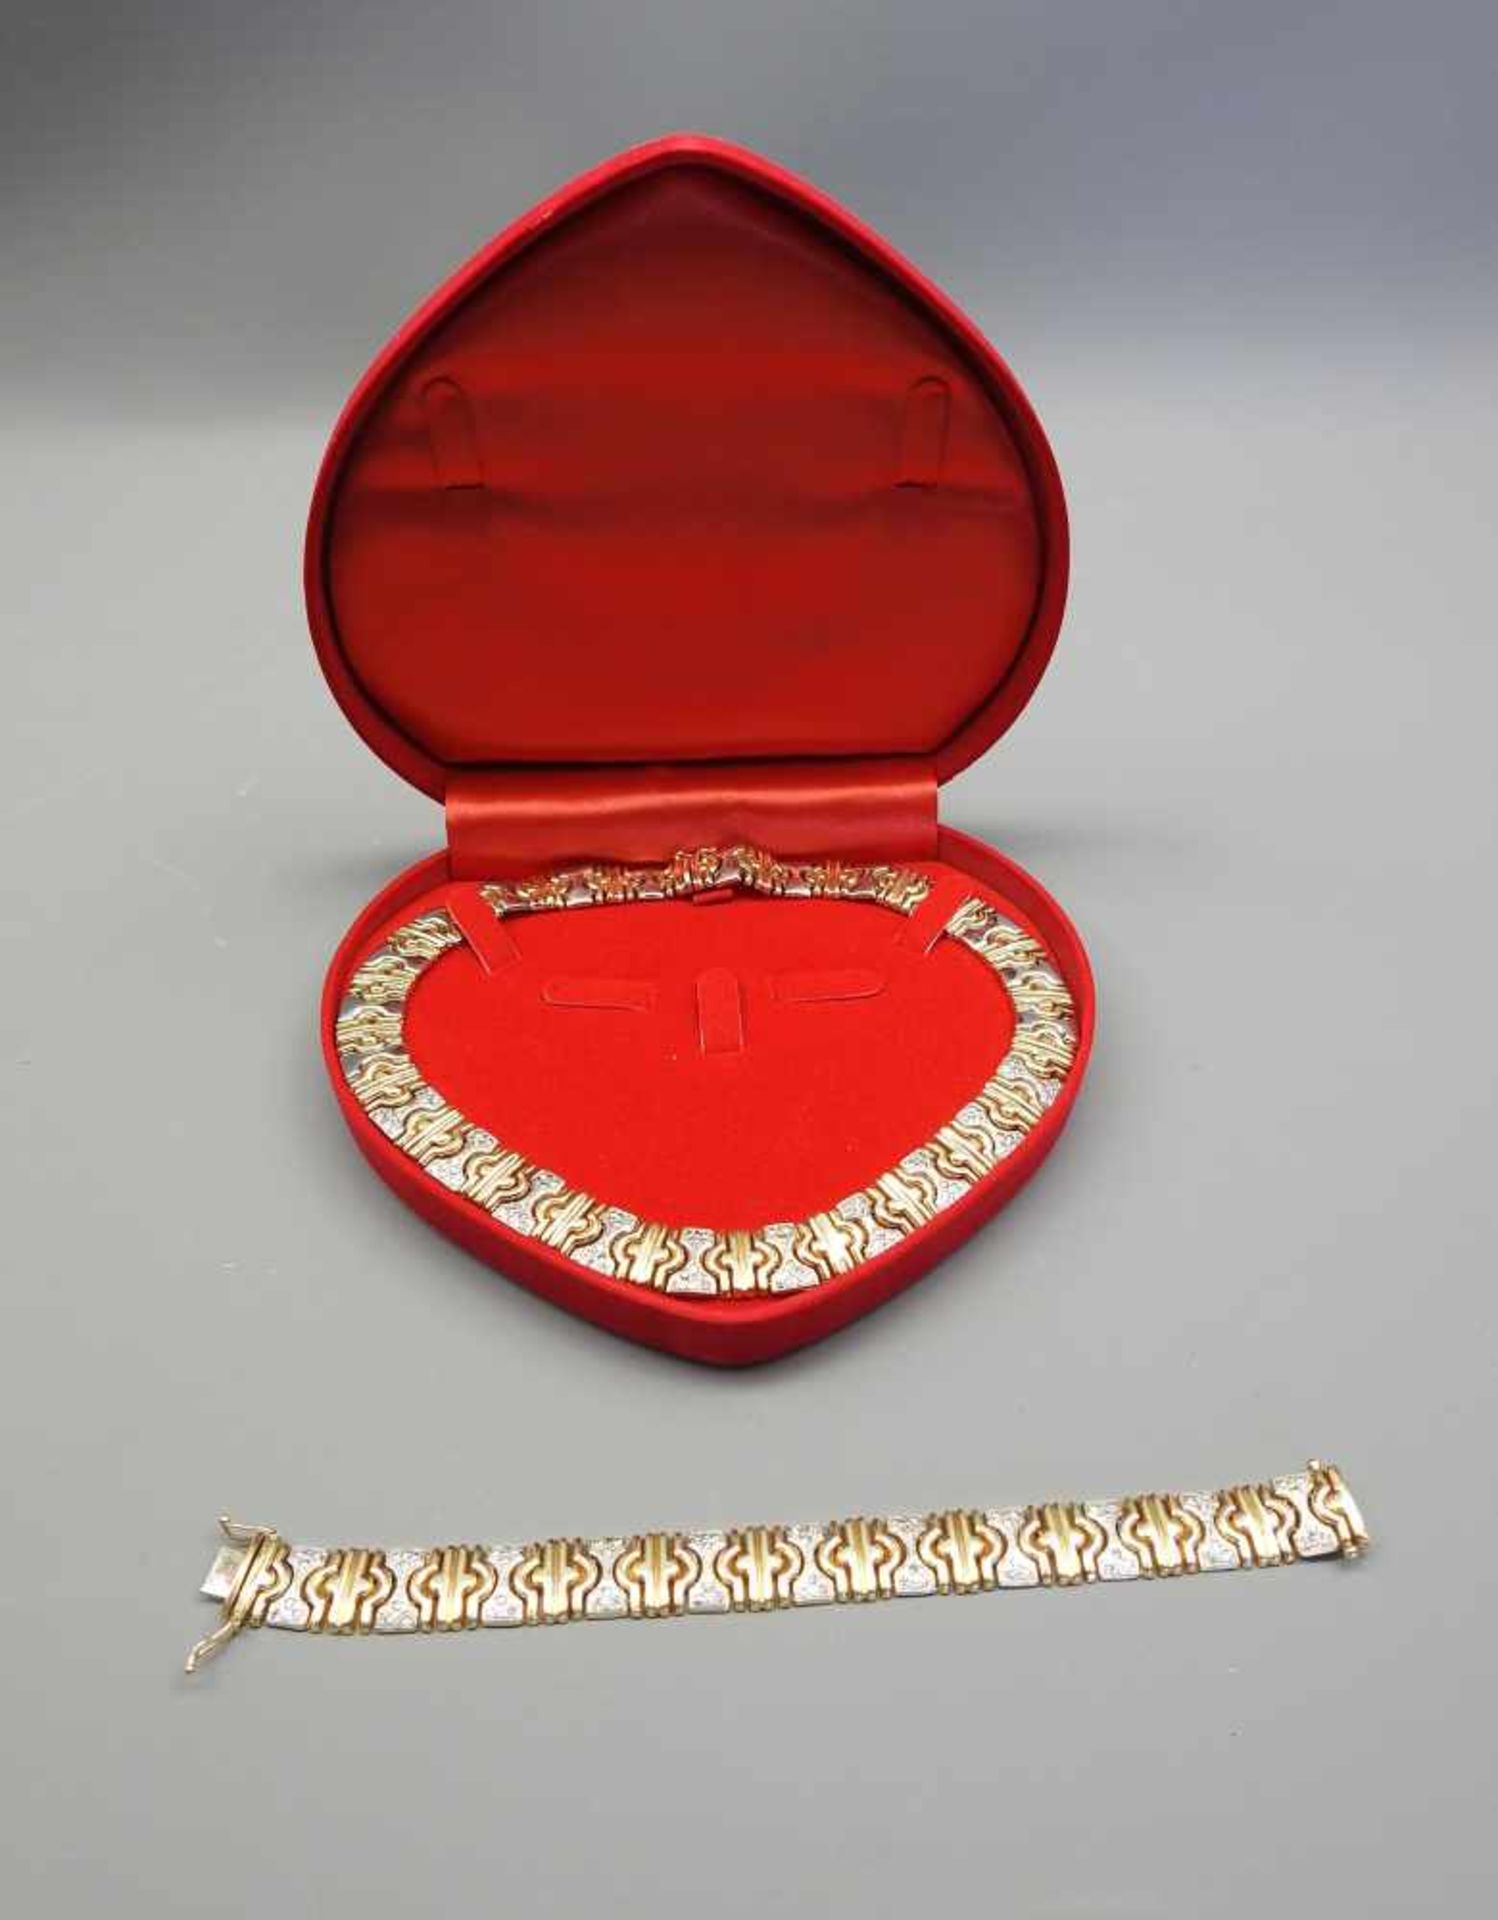 Collier und Armband14 K. Gelbgold mit Diamantbesatz von ca. 0,80 ct. Wohl Deutschland, 1980er-Jahre. - Bild 2 aus 4